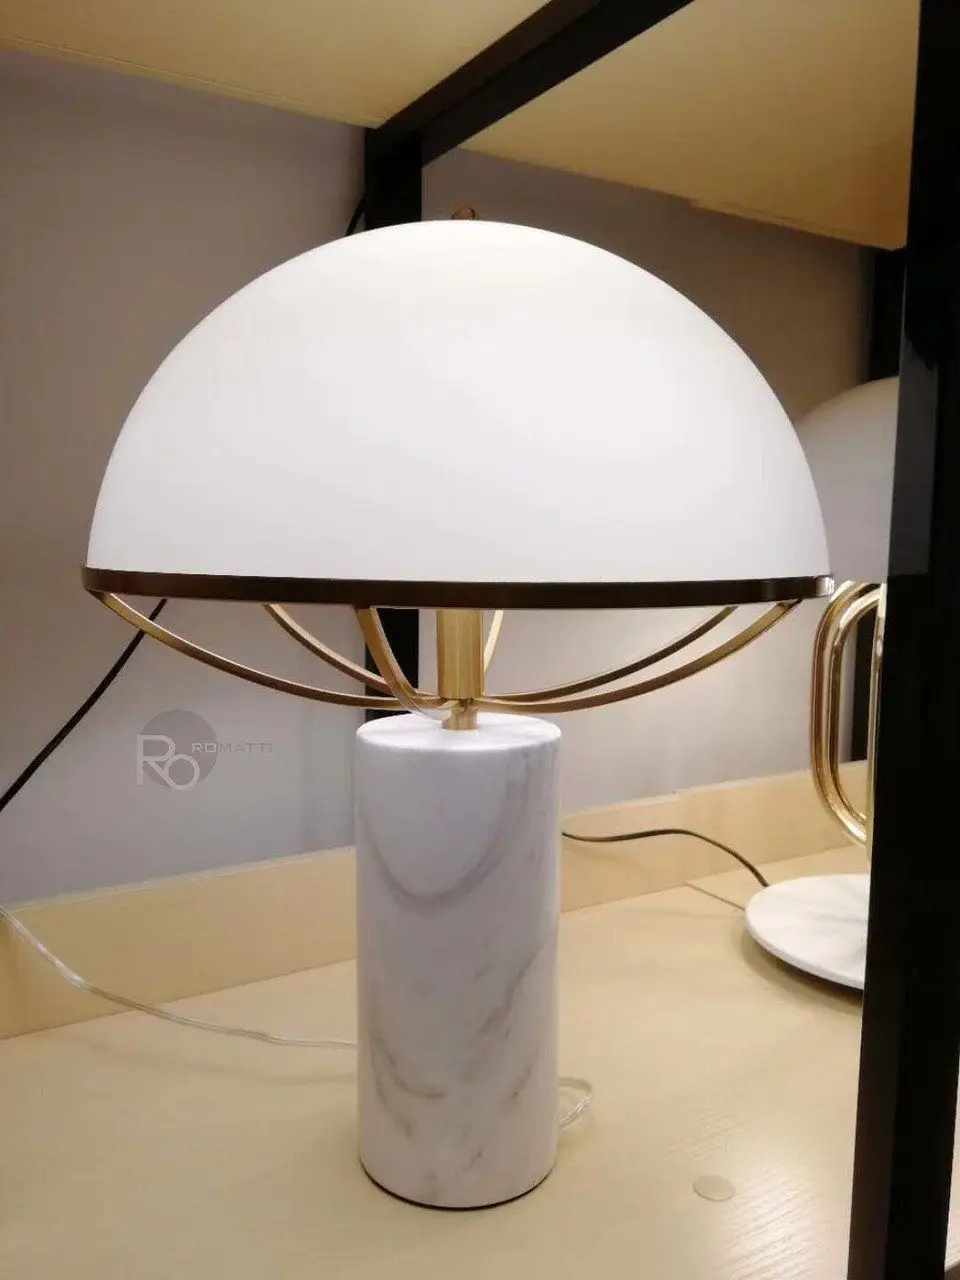 Настольная лампа Pandaris by Romatti